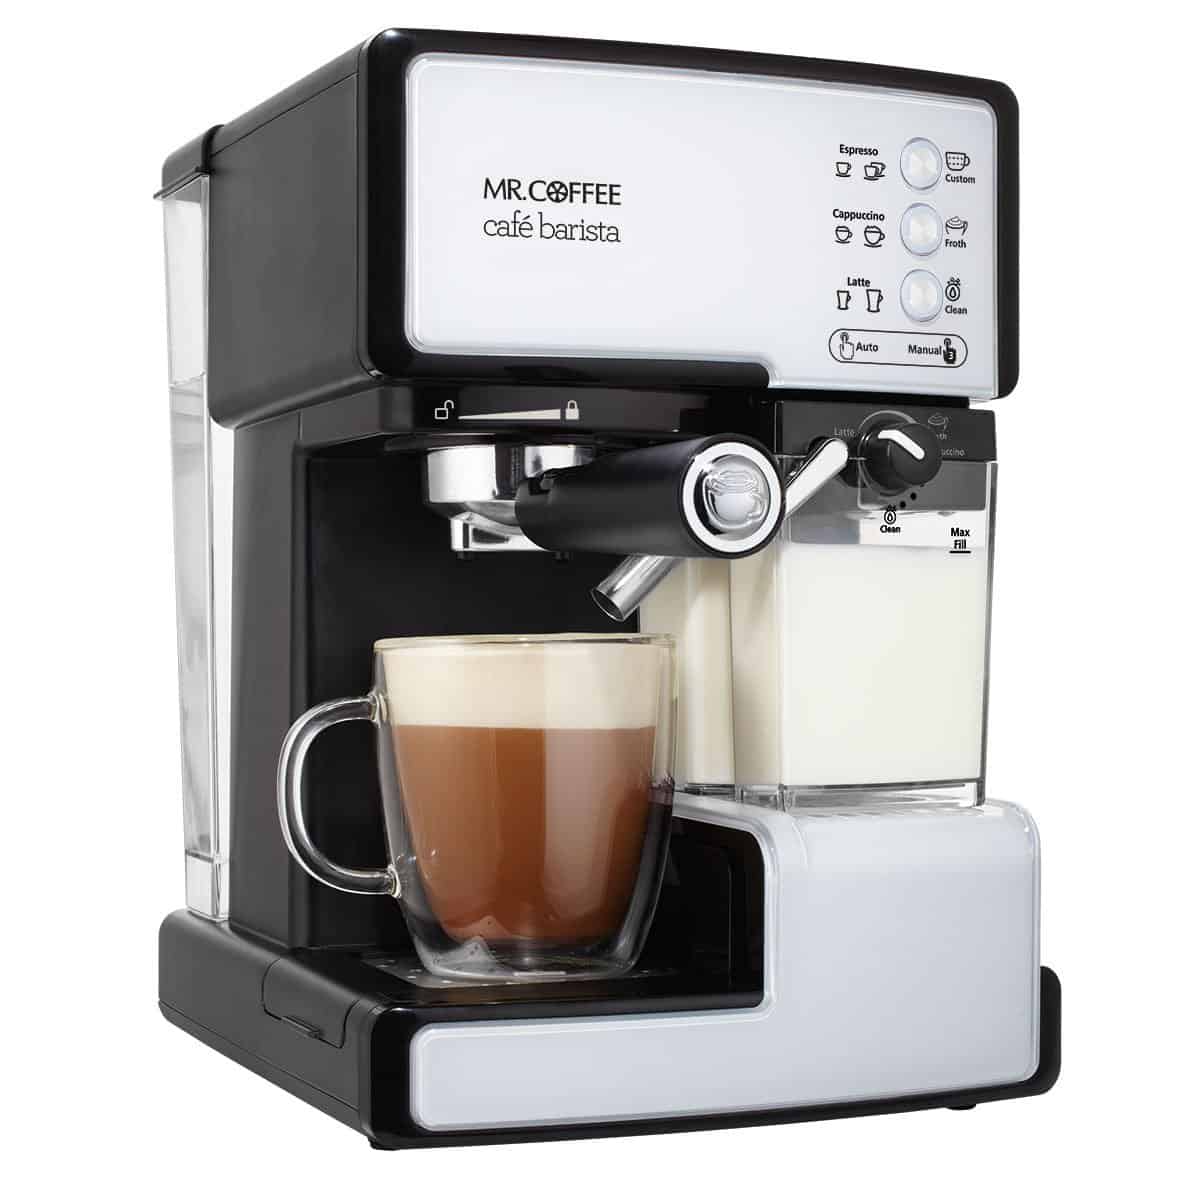 Mr. Coffee Café Barista Espresso and Cappuccino Maker, Silver